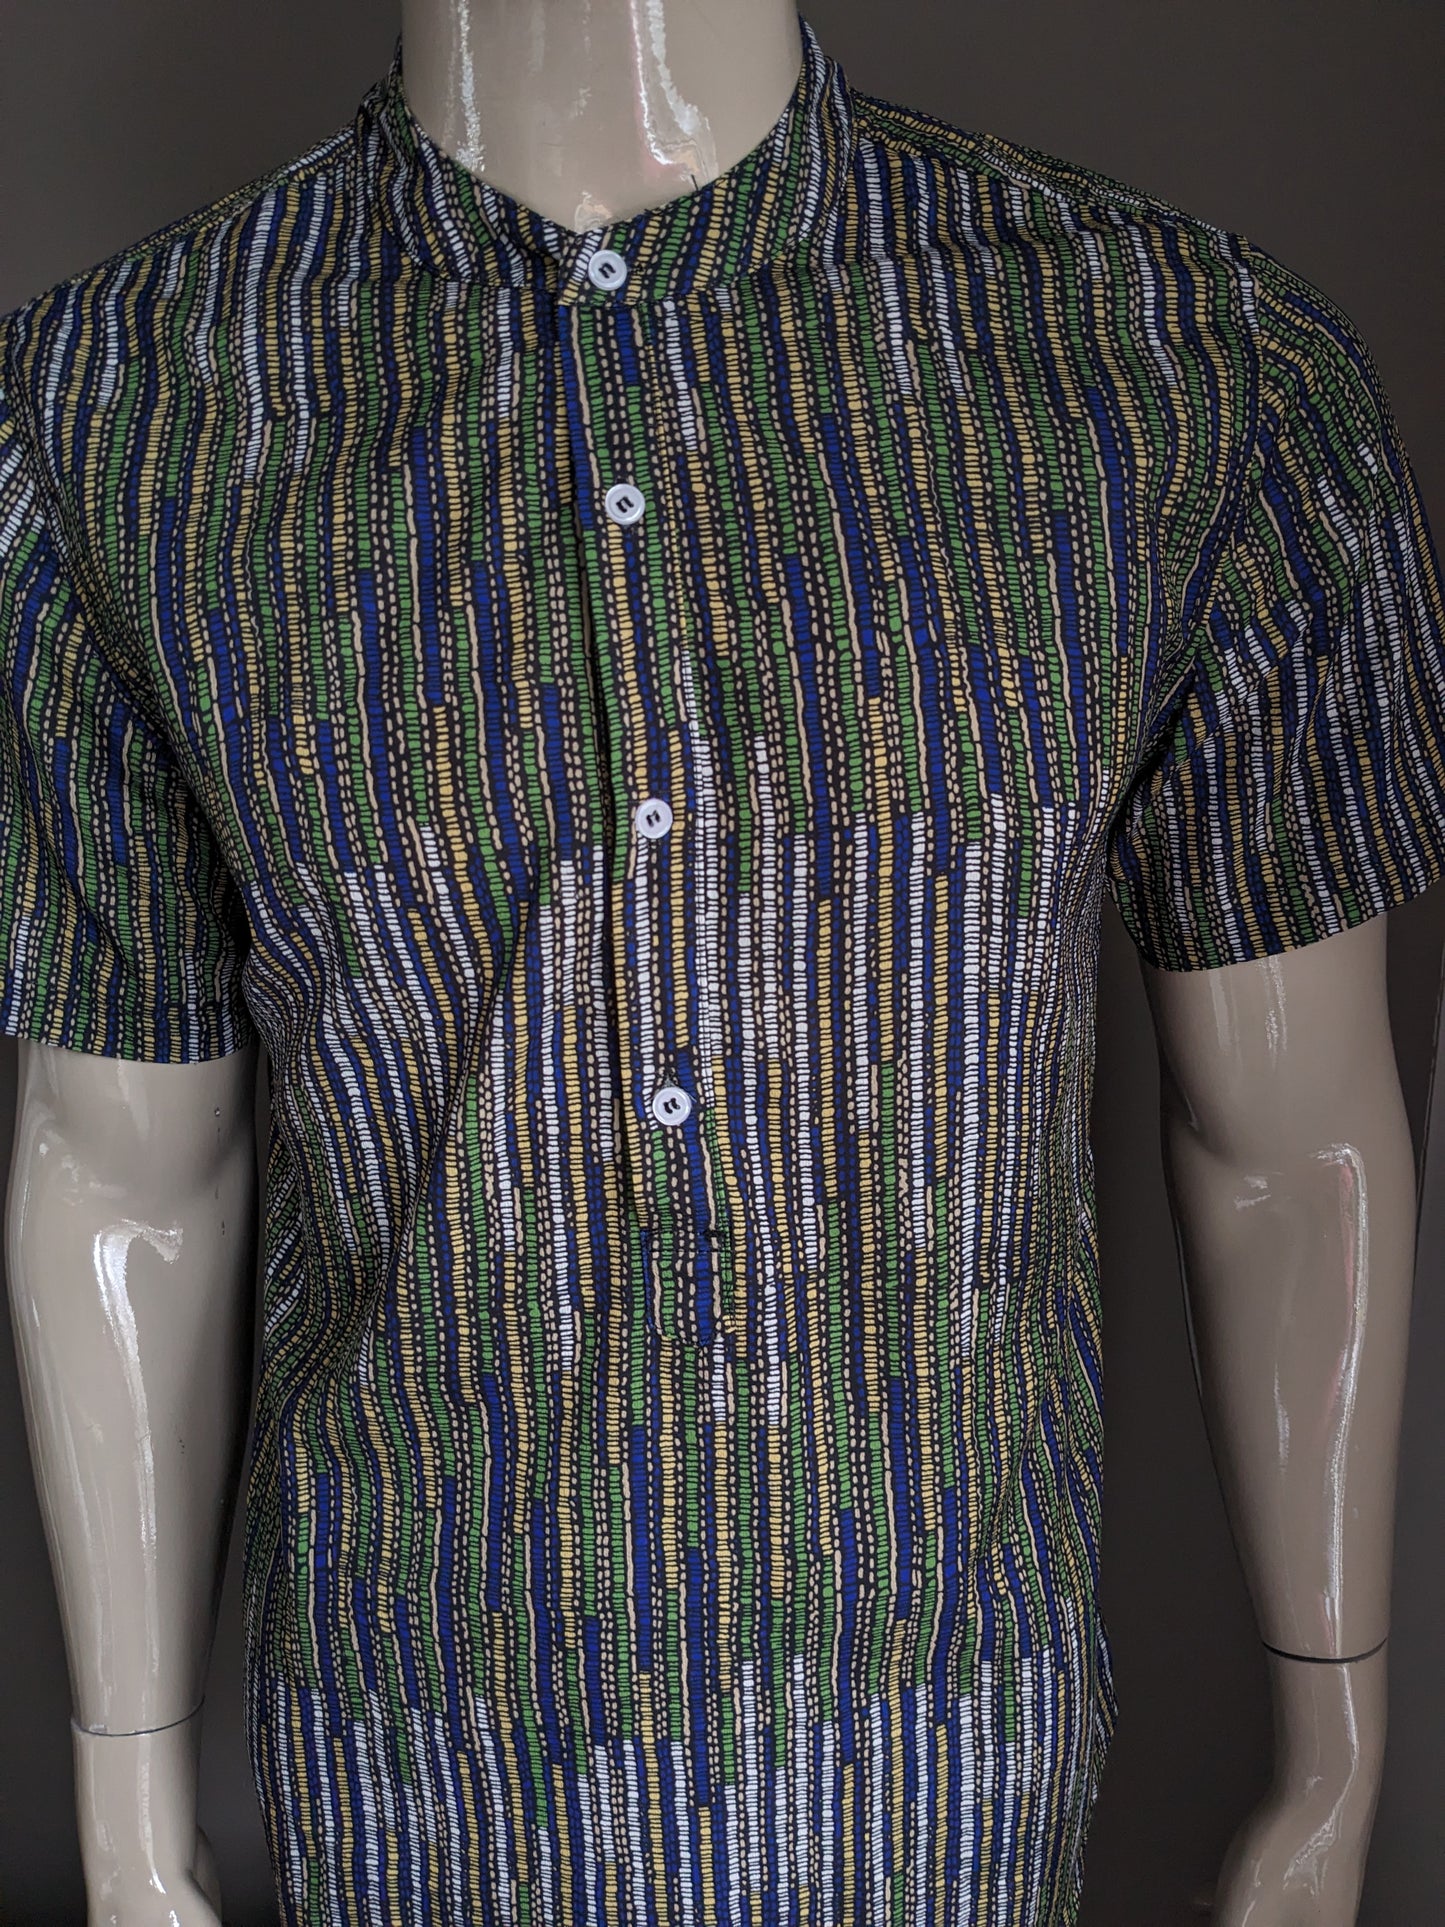 Collaro Mao vintage Polo / Shirt manica corta. Stampa gialla blu verde. Taglia M.